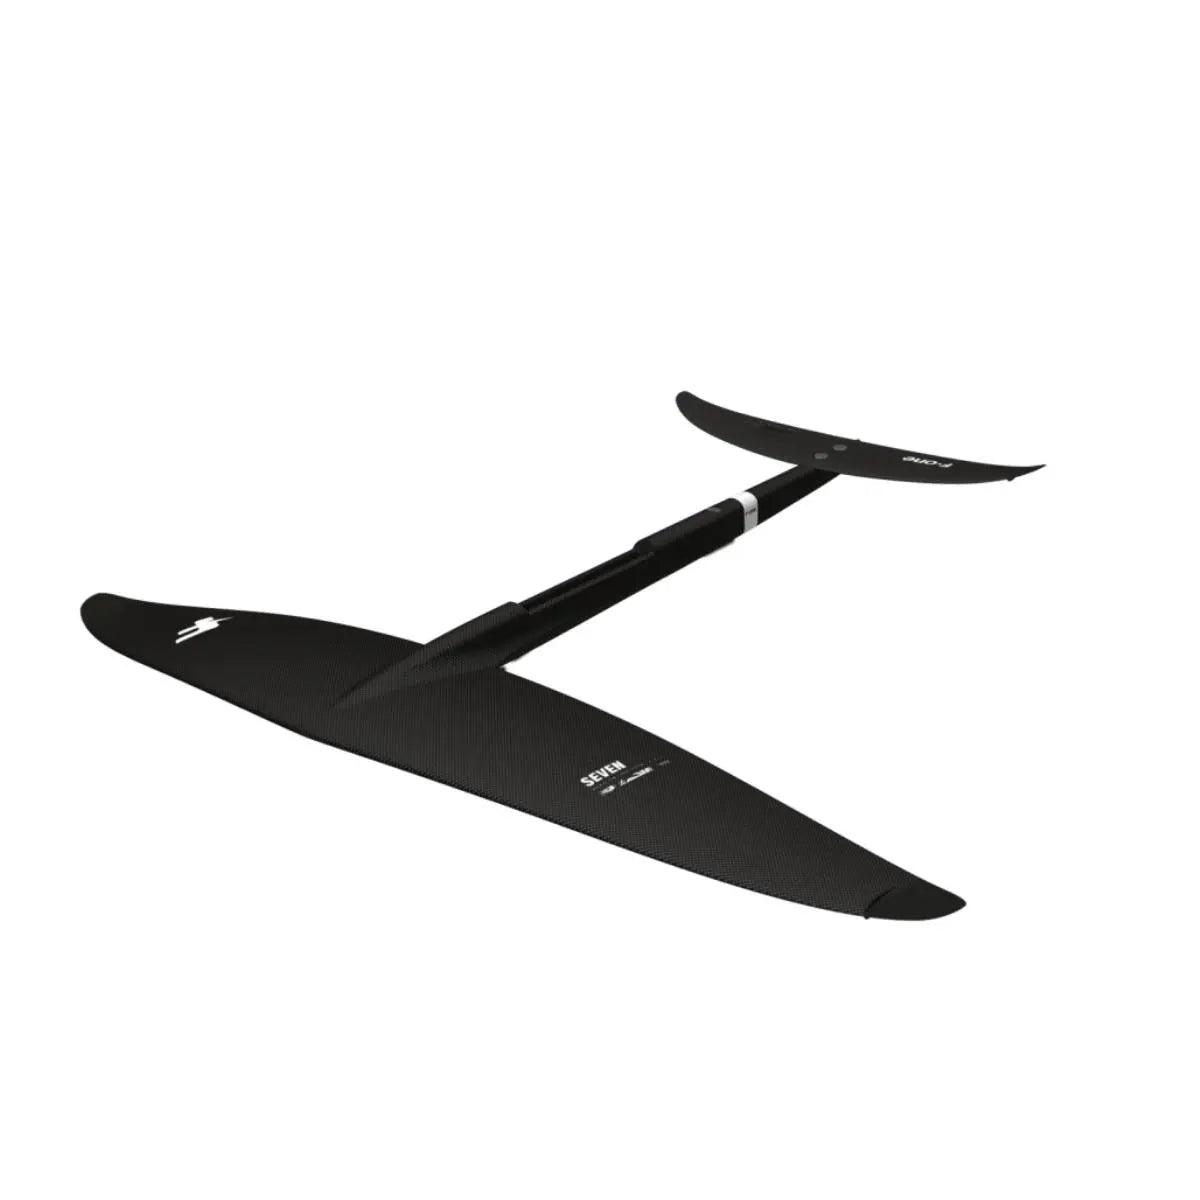 Seven Seas Carbon Wingfoil Plane